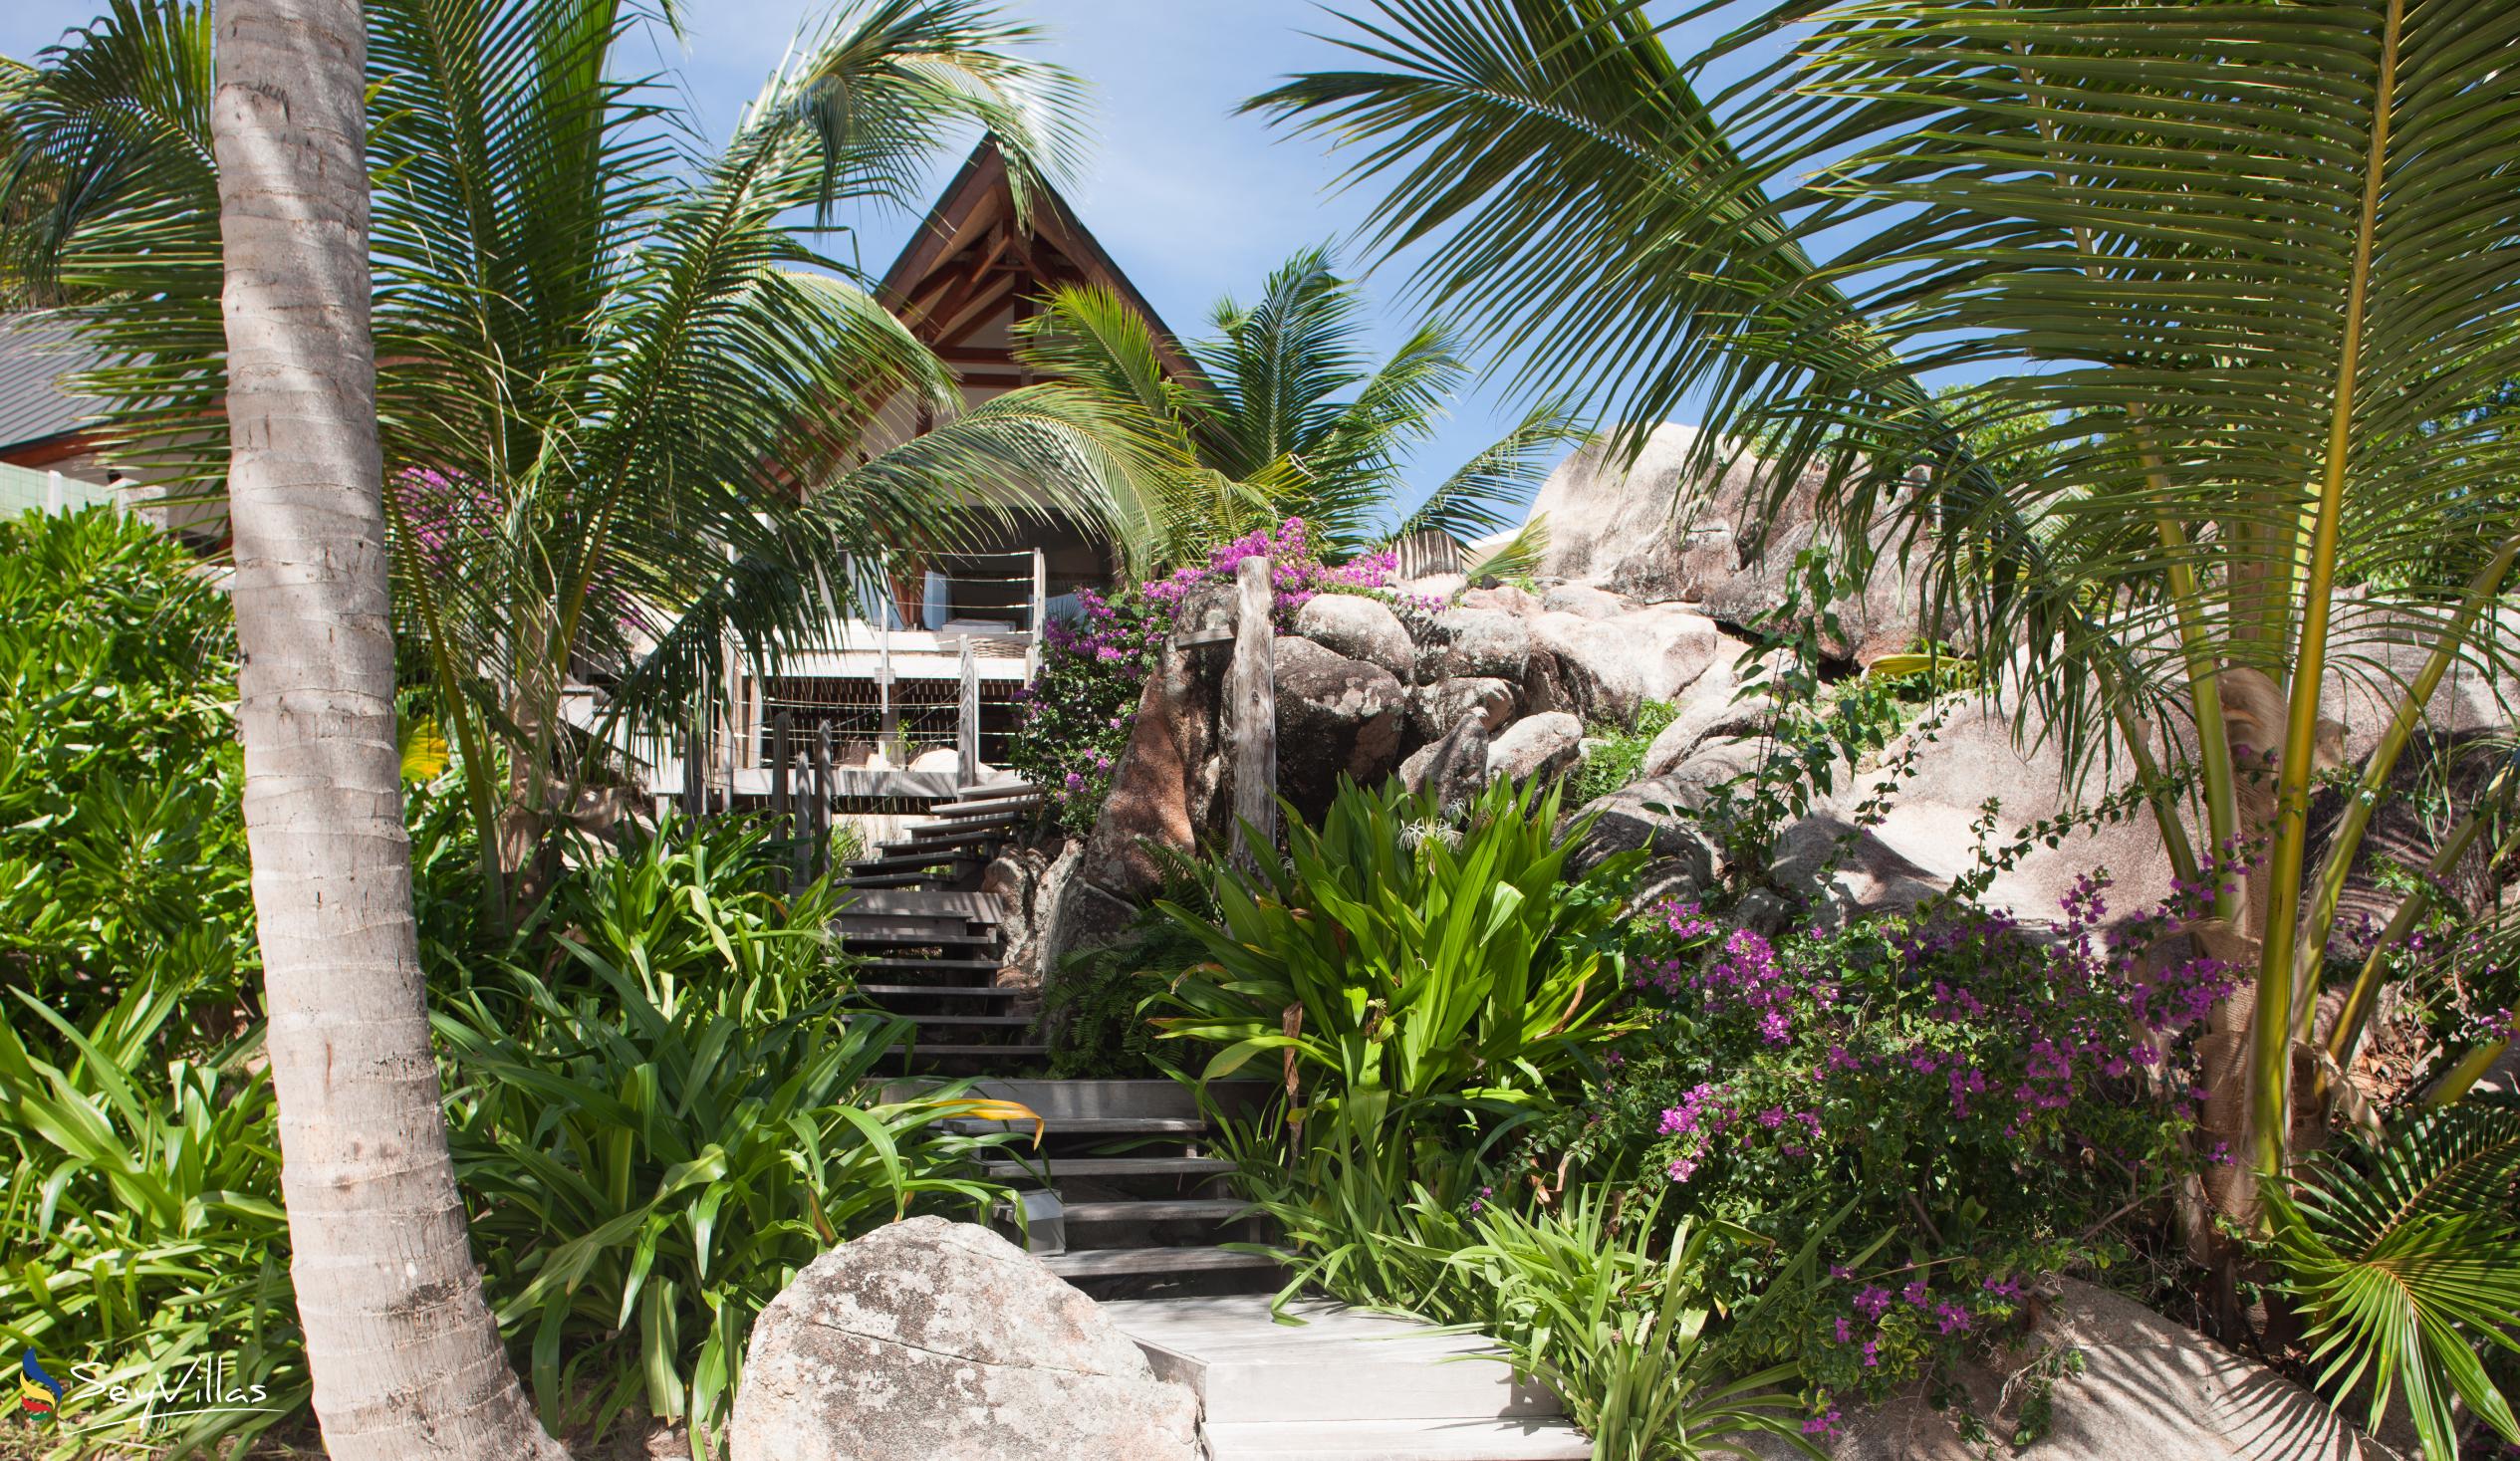 Foto 45: Villa Deckenia - Aussenbereich - Praslin (Seychellen)